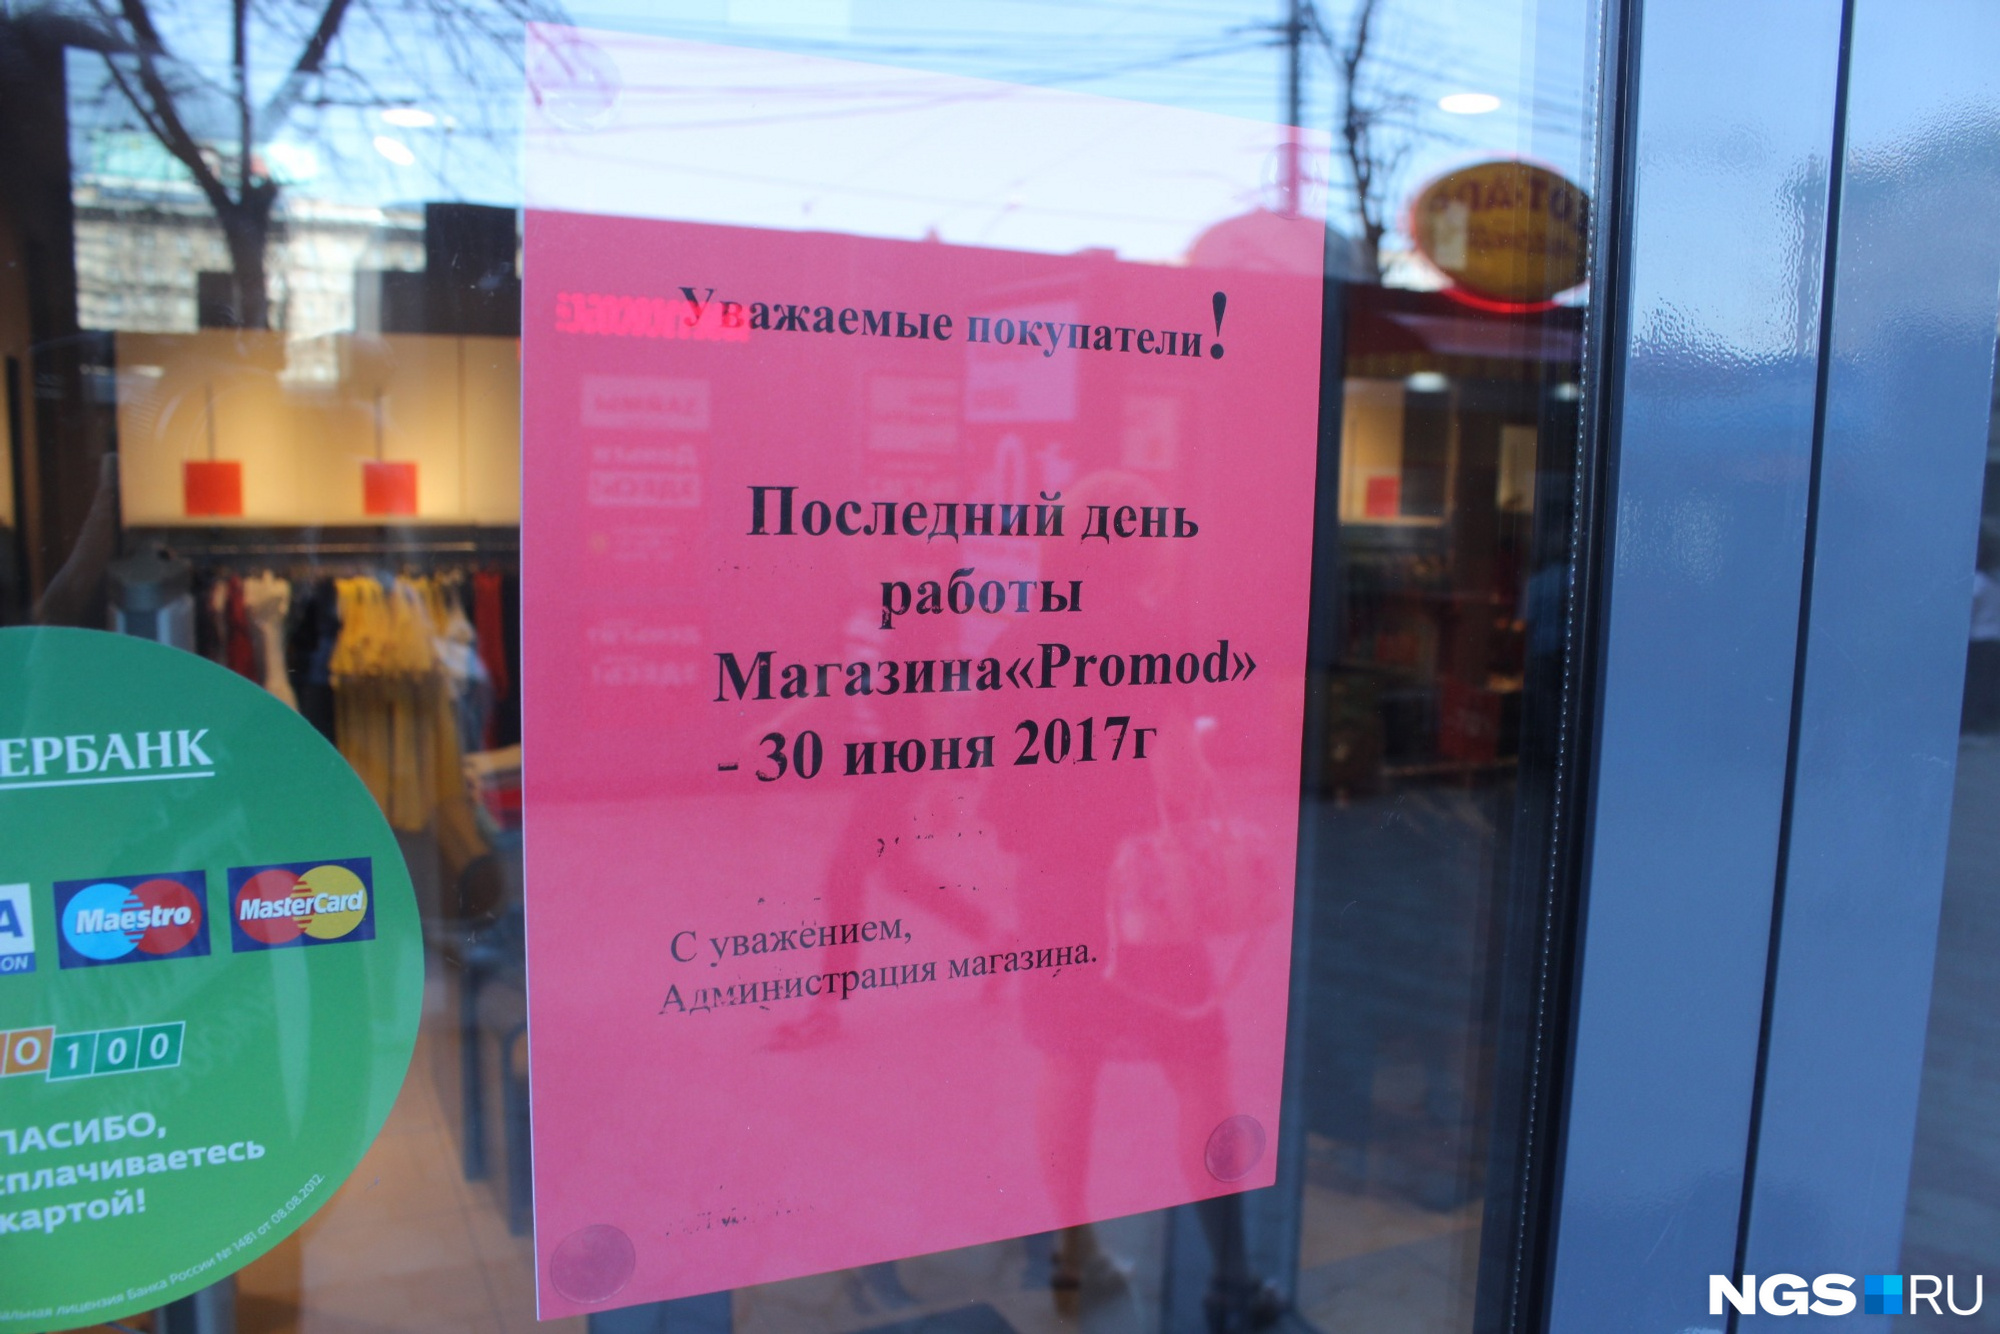 Закрывают что по дням работы. Список закрытых магазинов в Новосибирске.